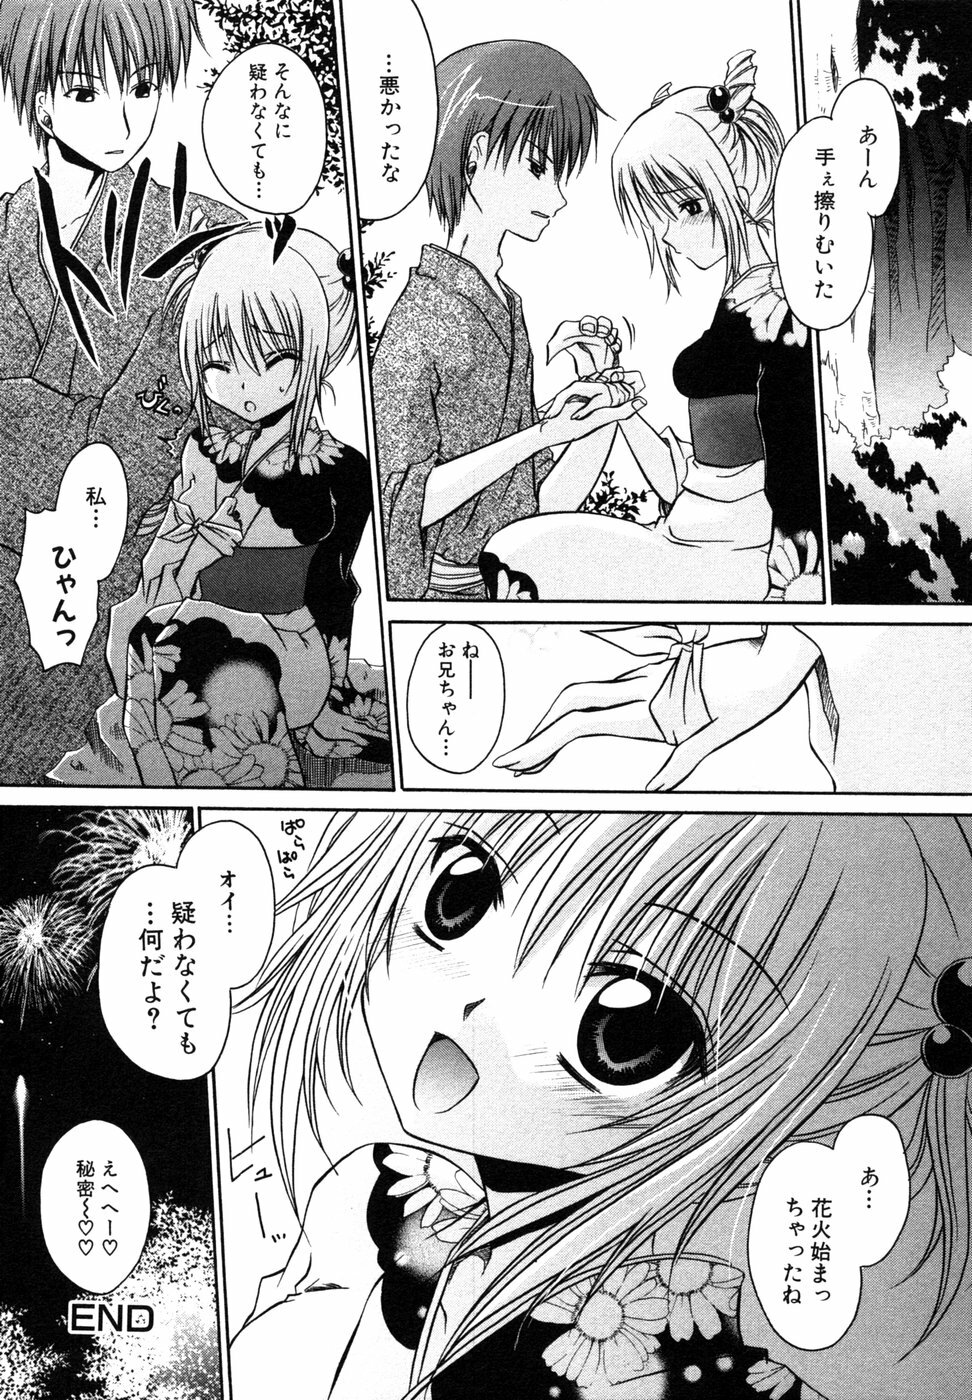 [Anthology] Himitsu no Tobira 5 Kinshin Ai Anthology (The Secret Door) page 21 full